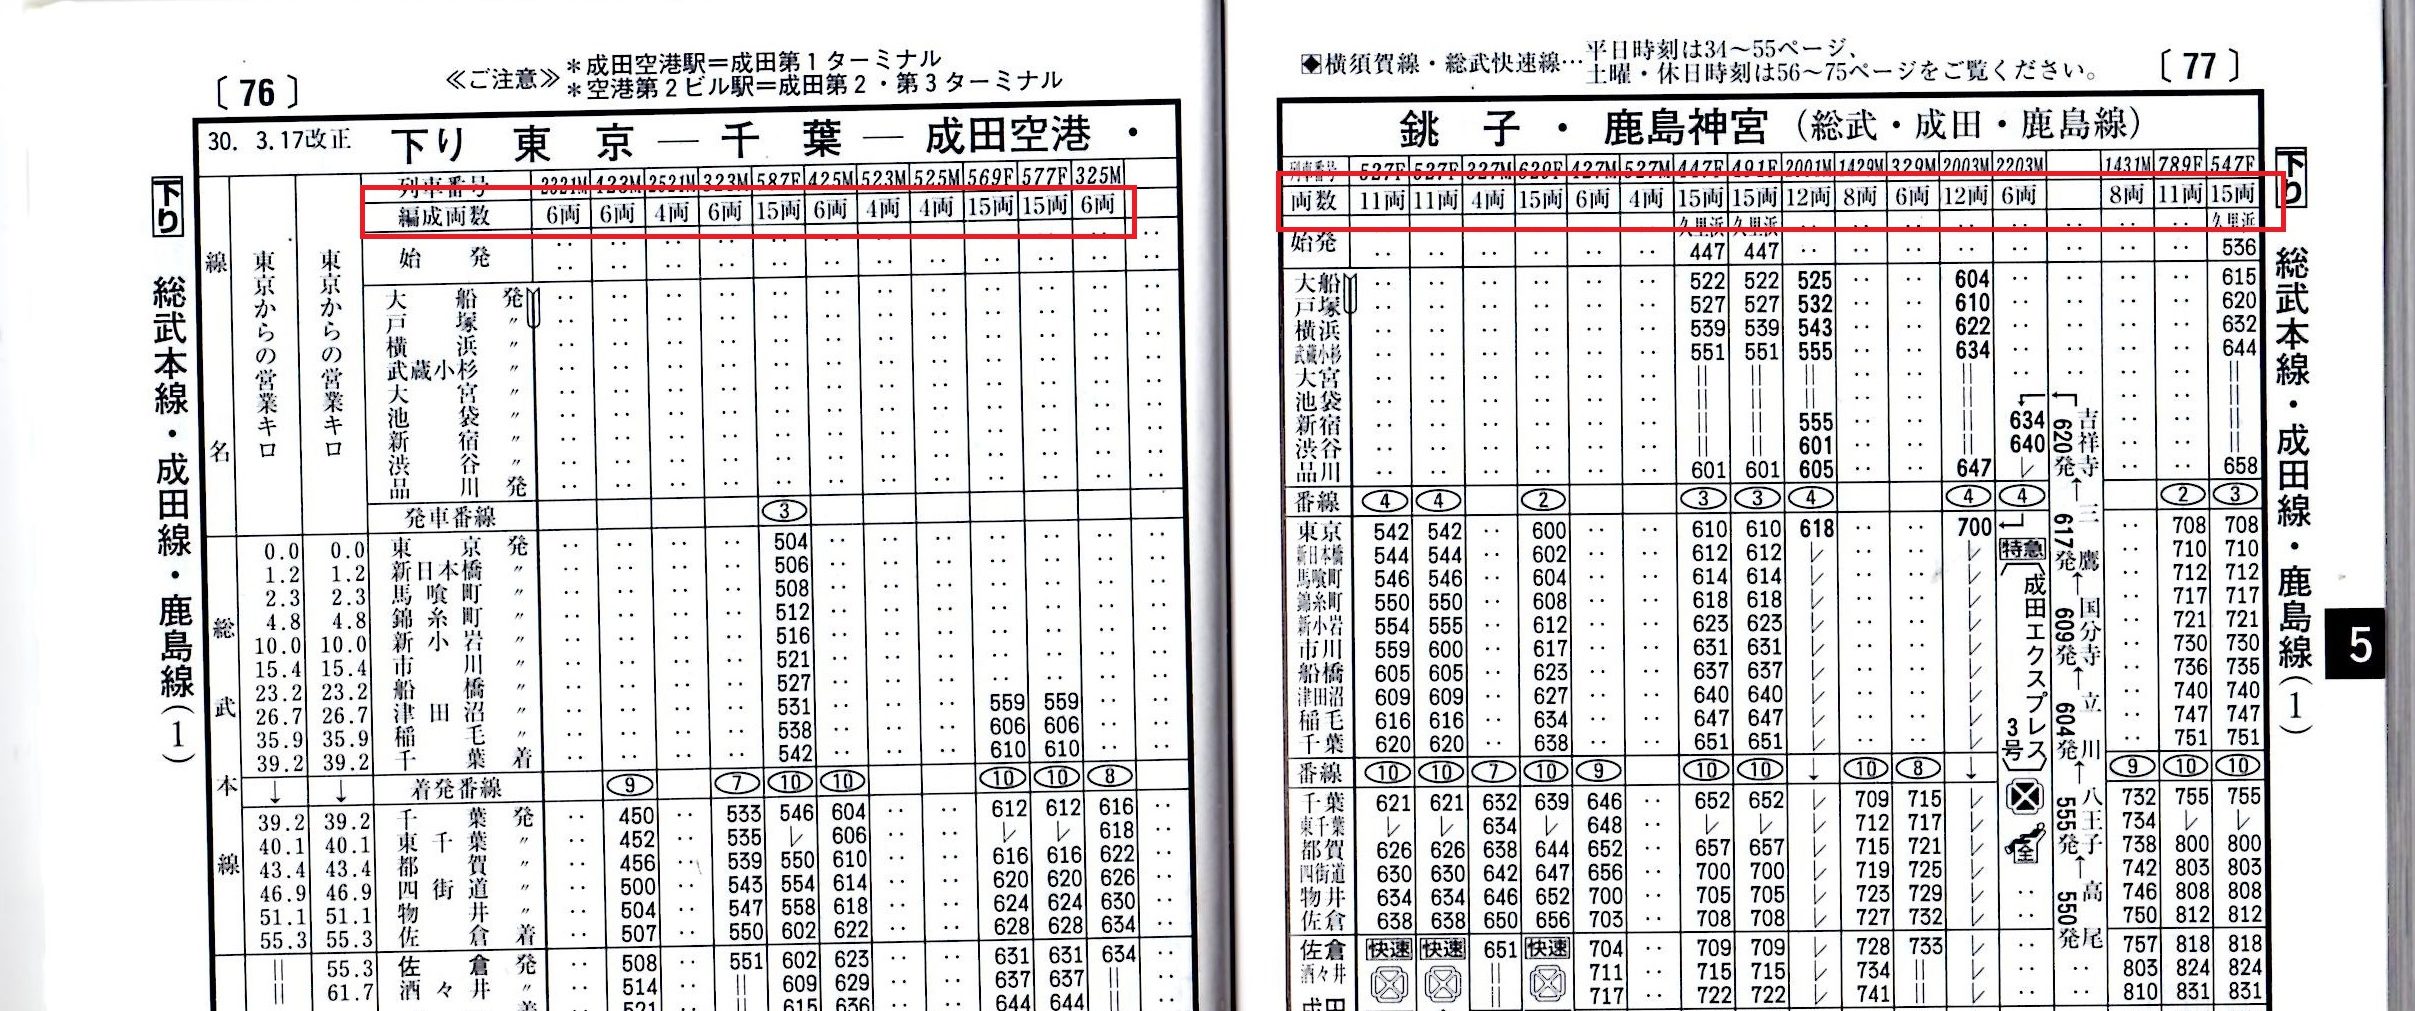 内房線運行状況 JR東日本の運行状況・電車遅延情報・リアルタイム速報まとめ。